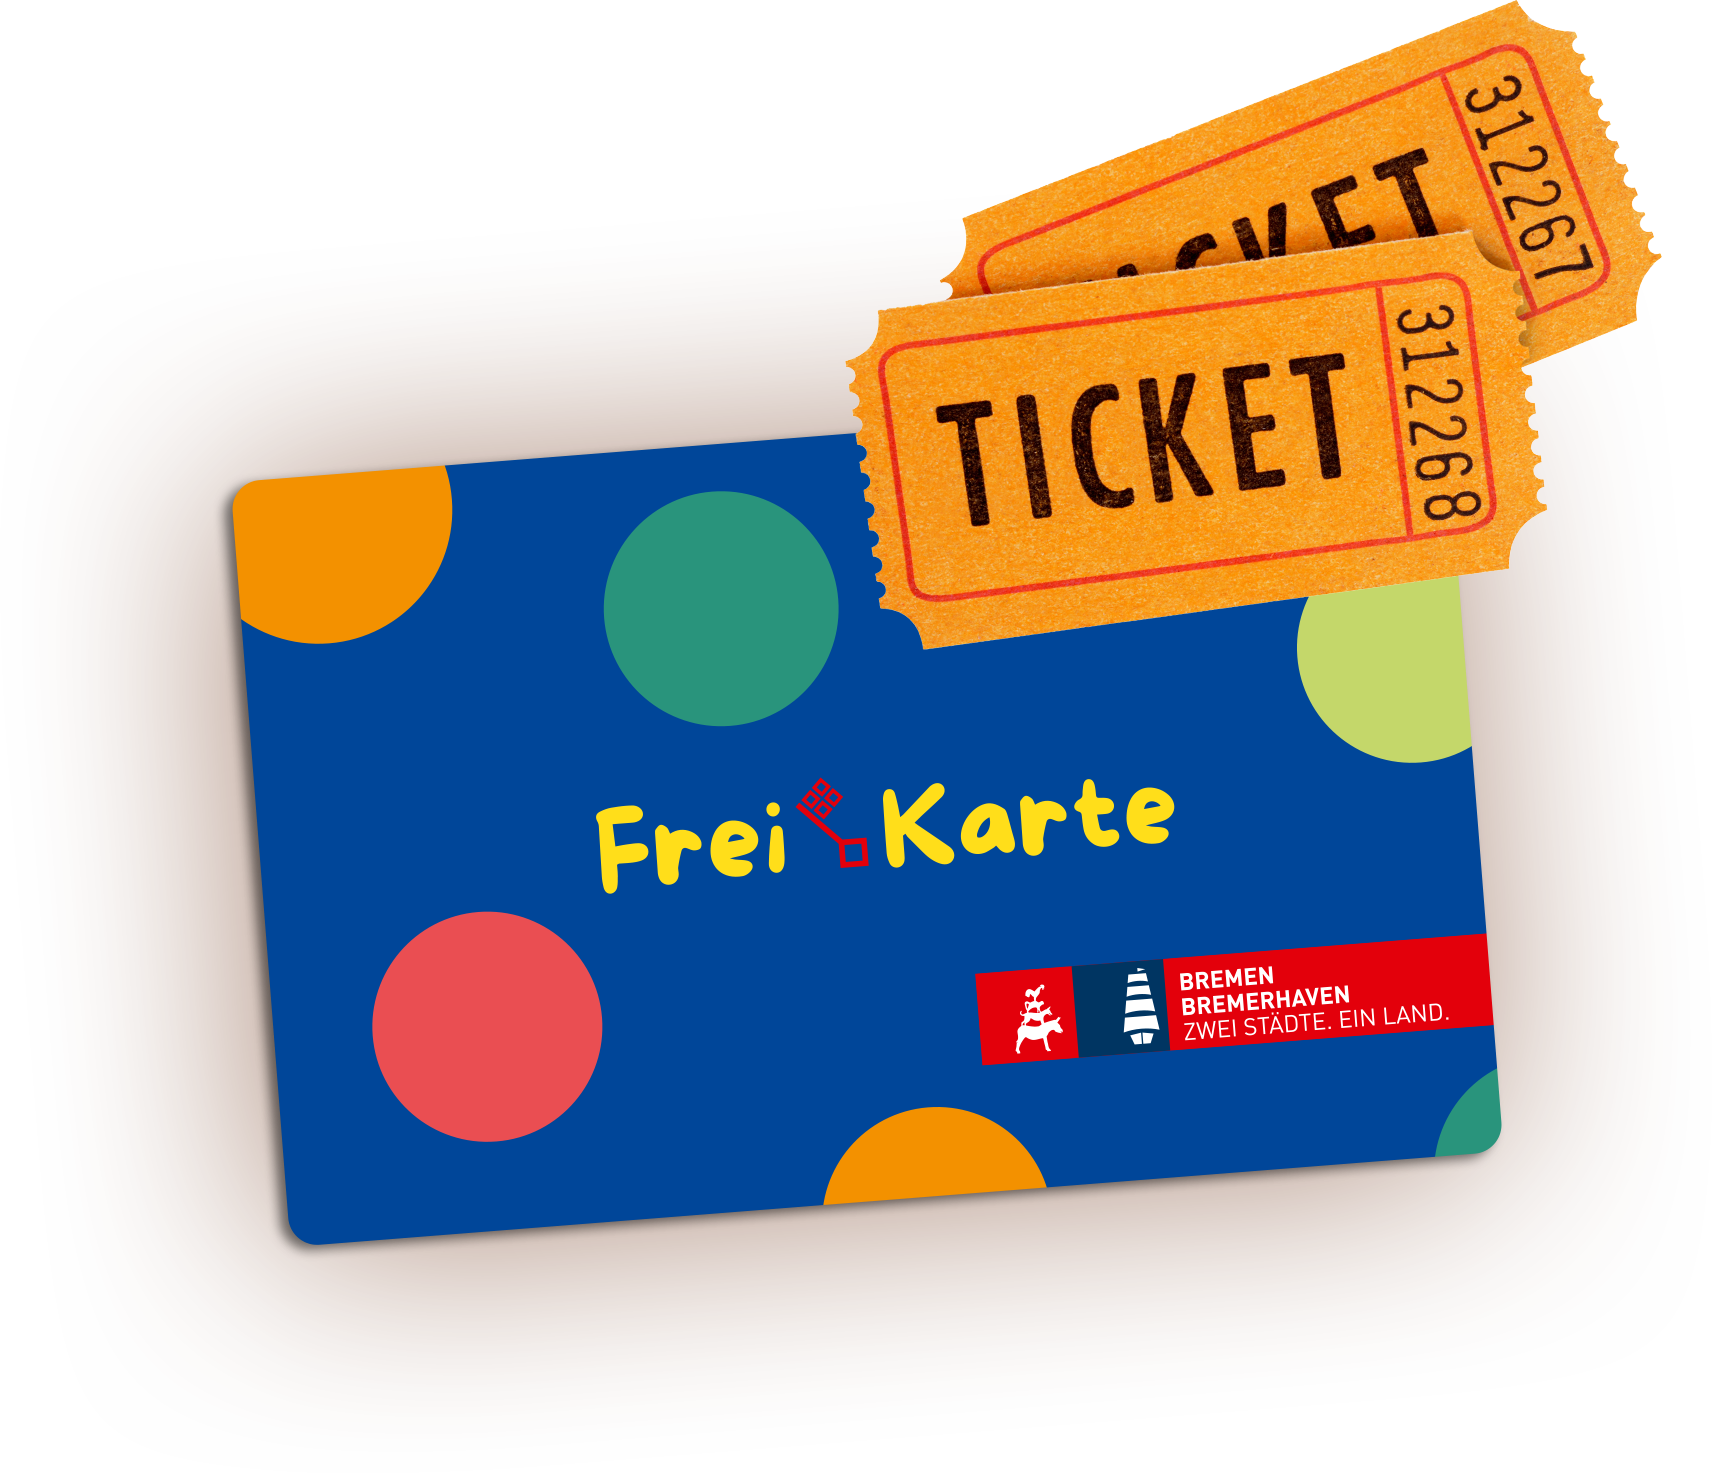 Abbildung der Freikarte Bremen 